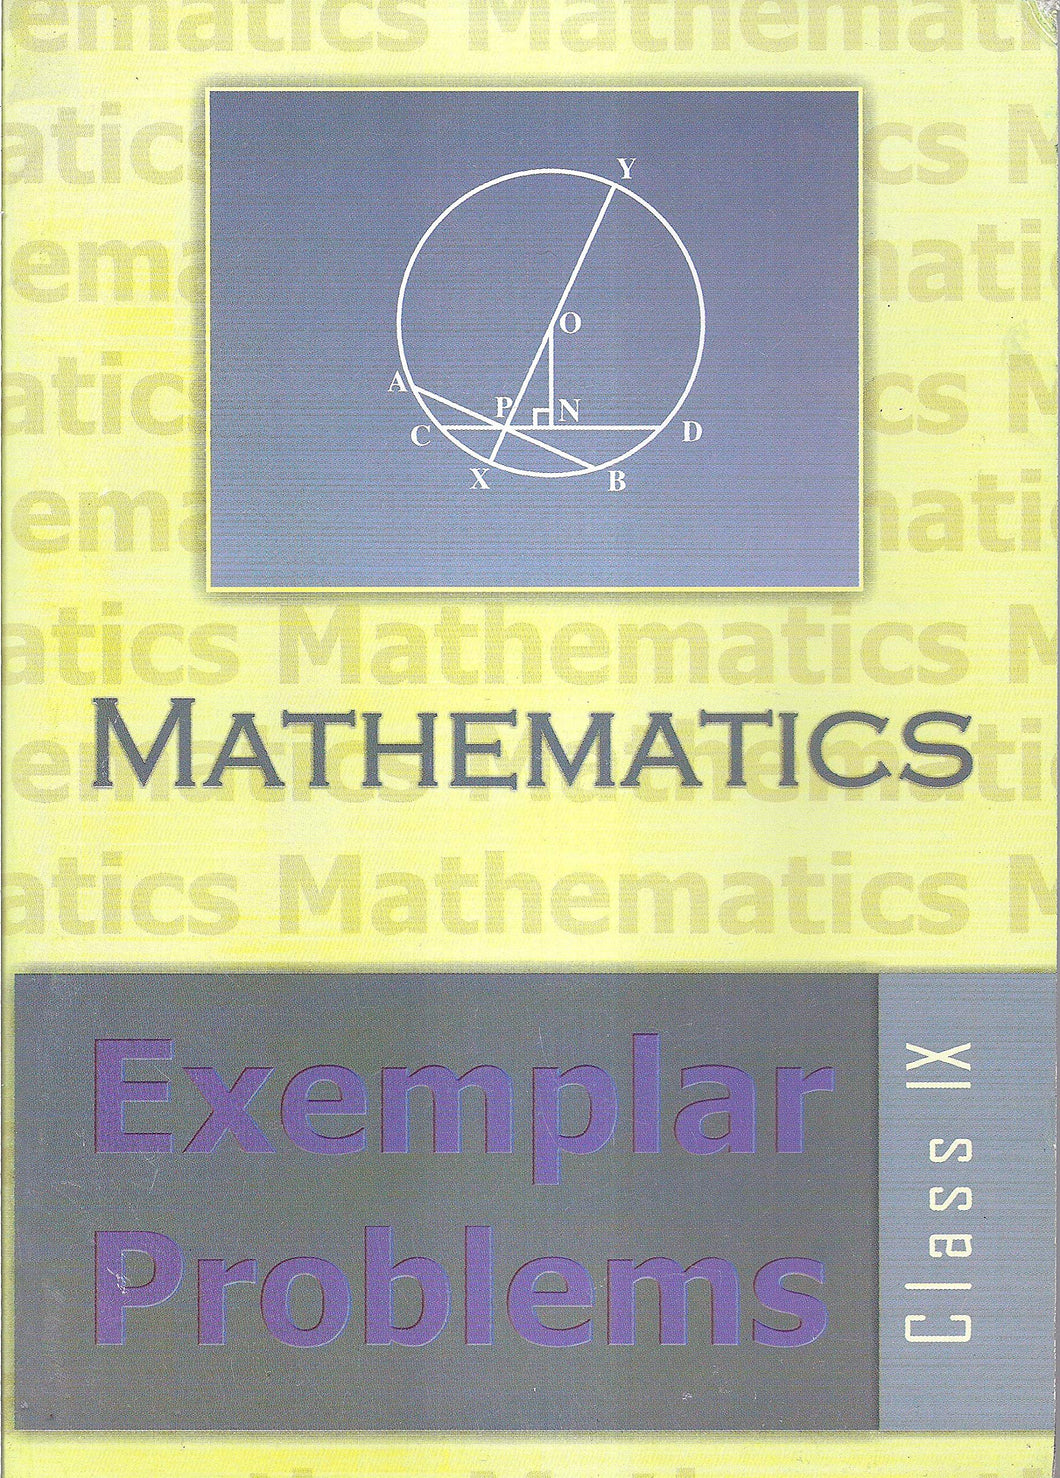 NCERT Mathematics Exemplar Problems for Class 9 - latest edition as per NCERT/CBSE - Booksfy